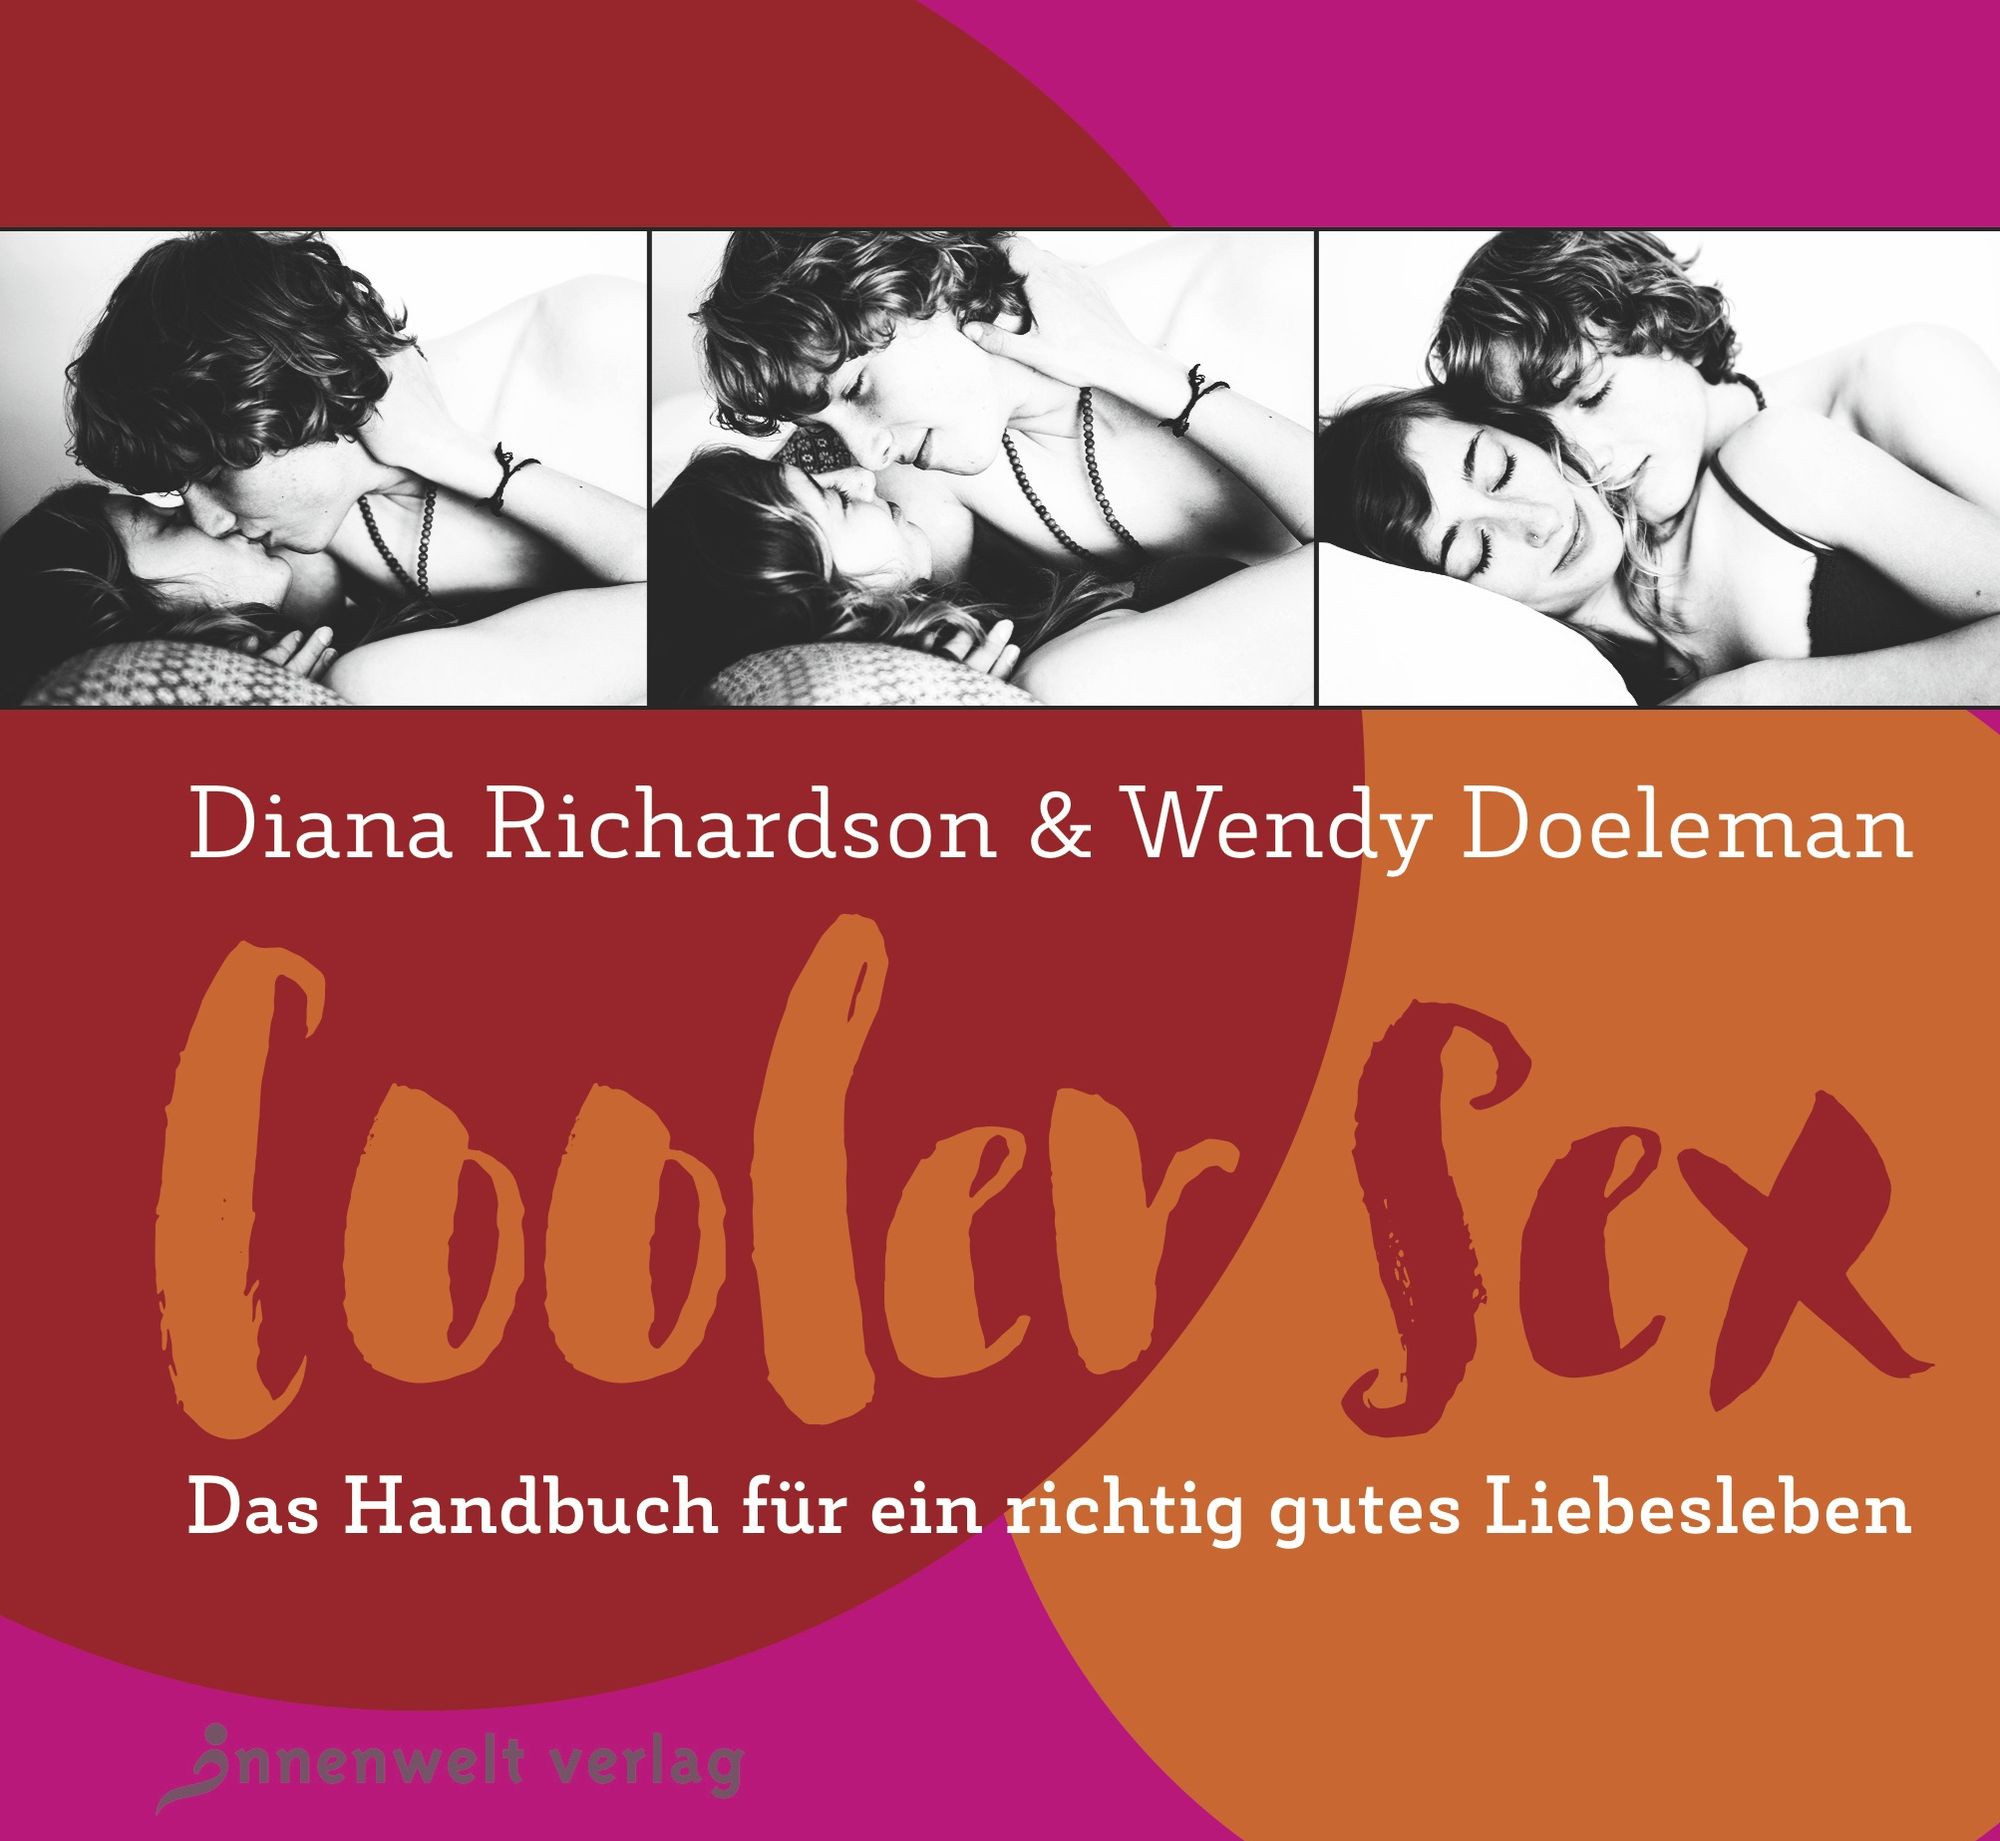 Cooler Sex von Wendy Doeleman - Buch Bild